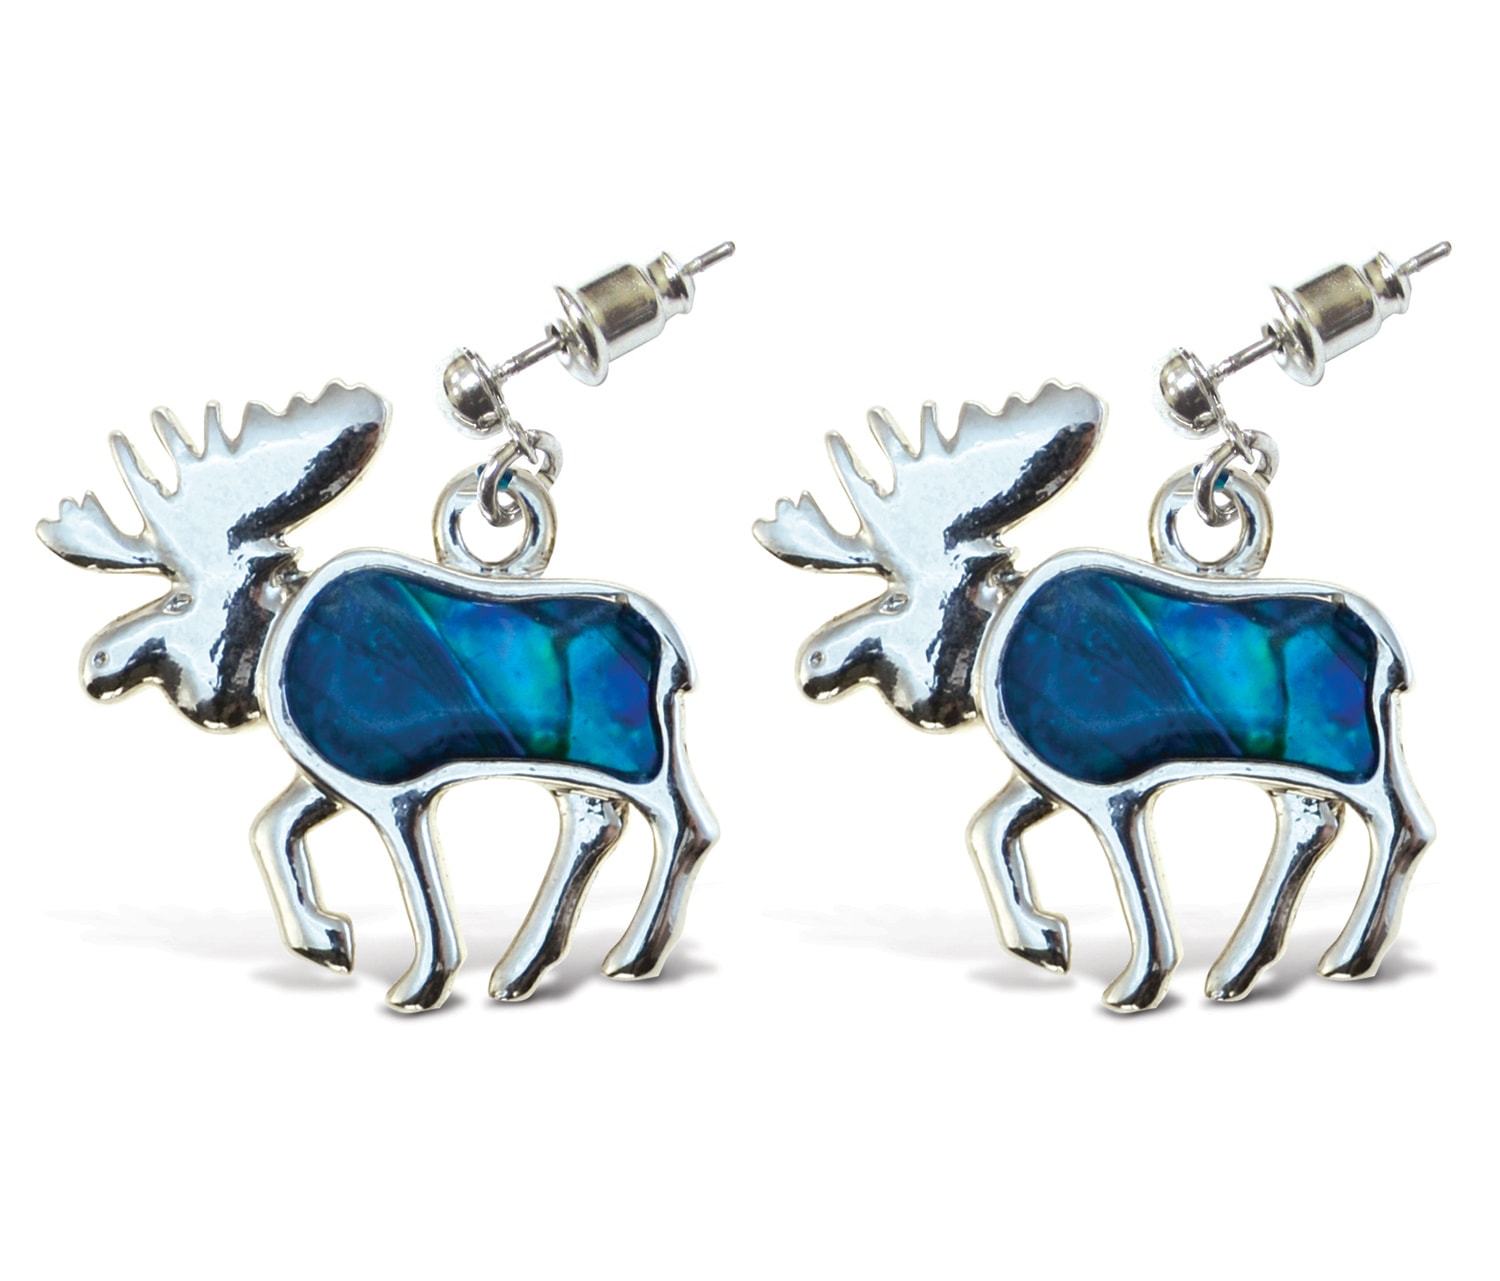 Metal Bullet Moose – Aqua Jewelry – Earrings – Dangle Post